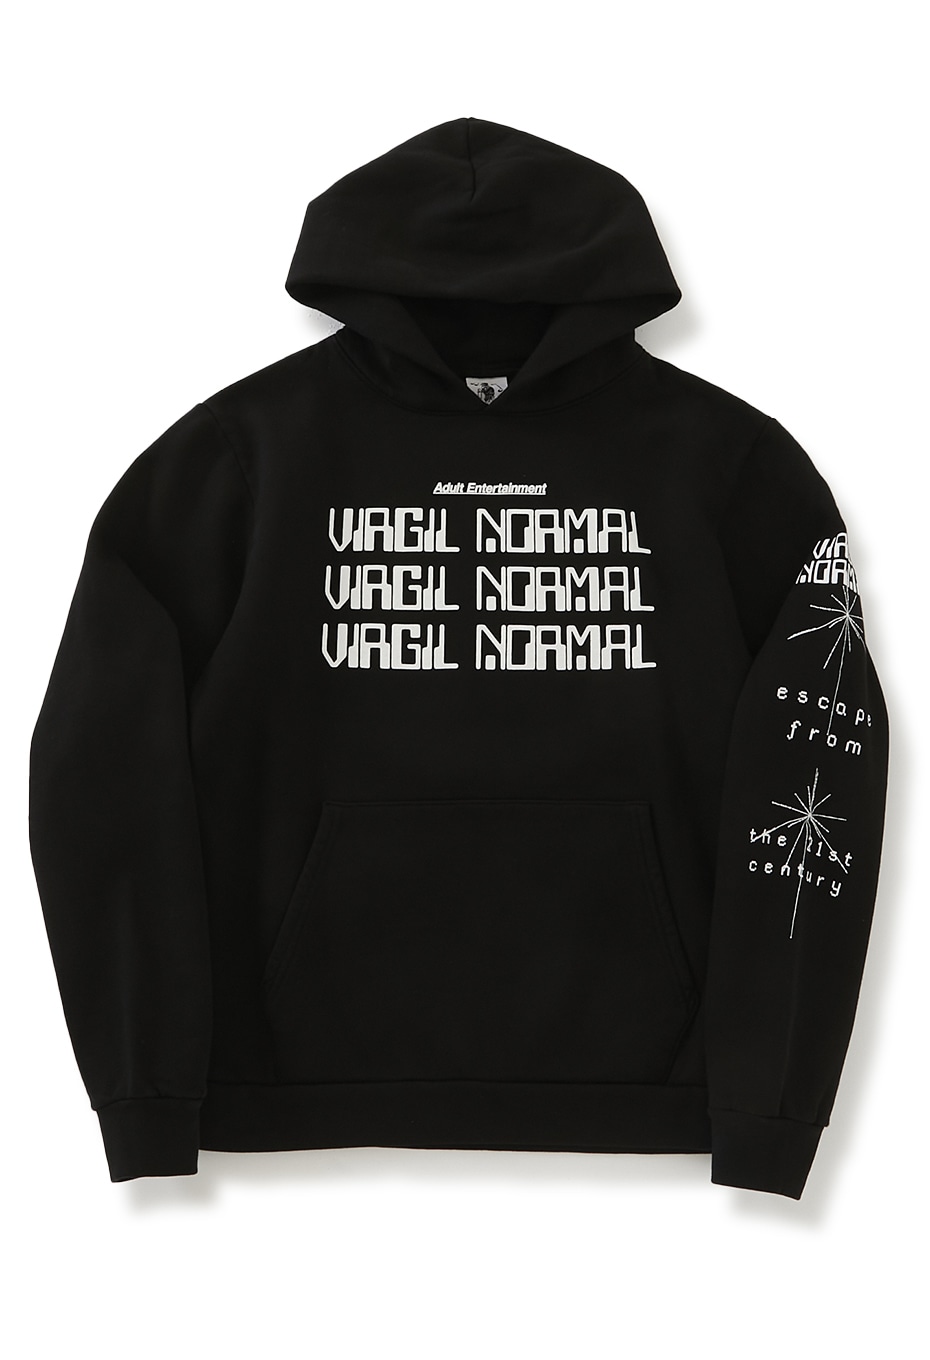 VIRGIL NORMAL OSCILATE WILDLY hoodie